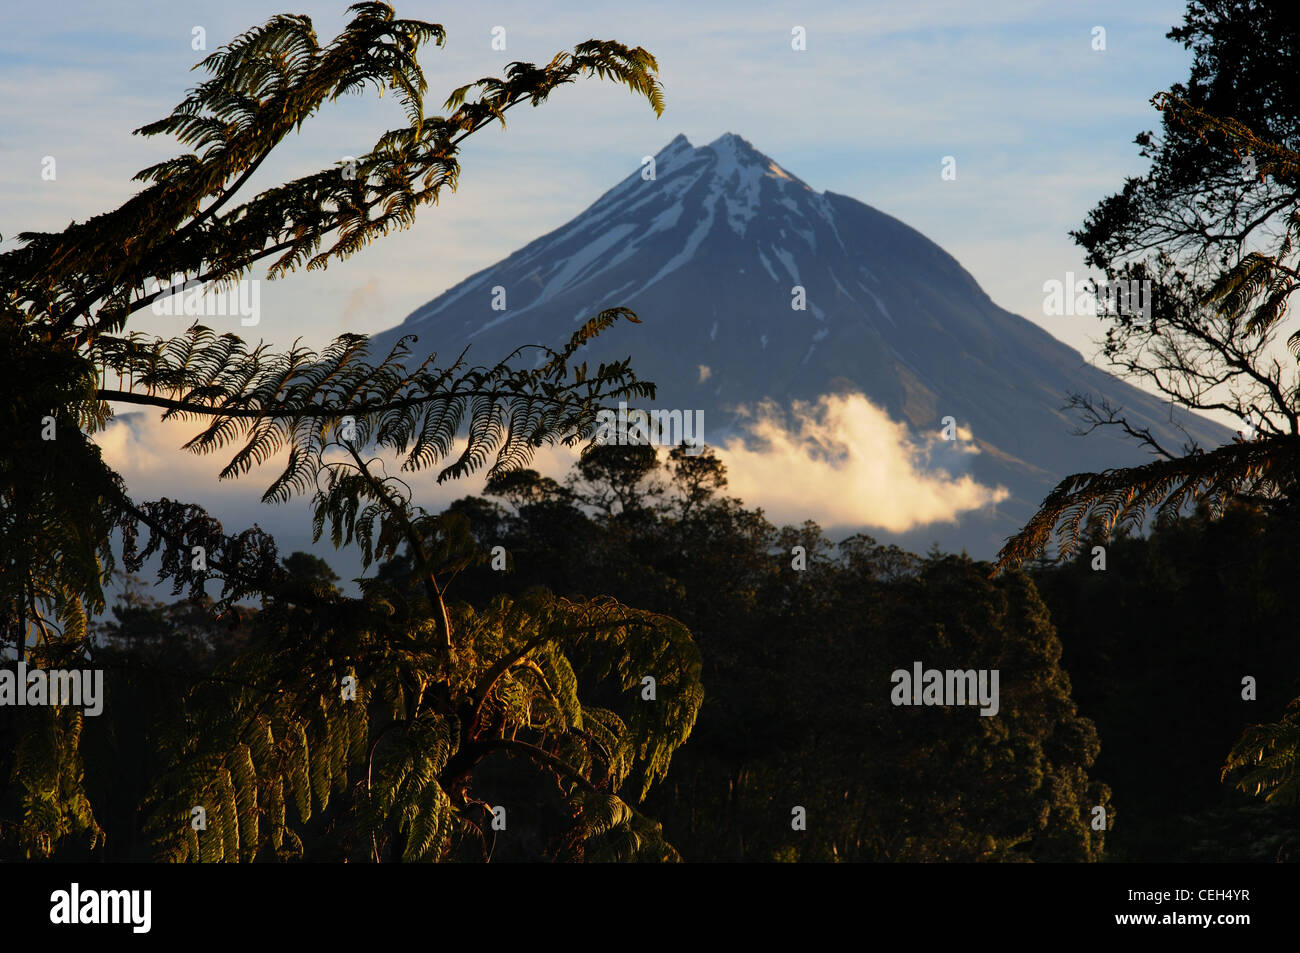 Mount Egmont (Taranaki) in New Zealand at Sunset Stock Photo